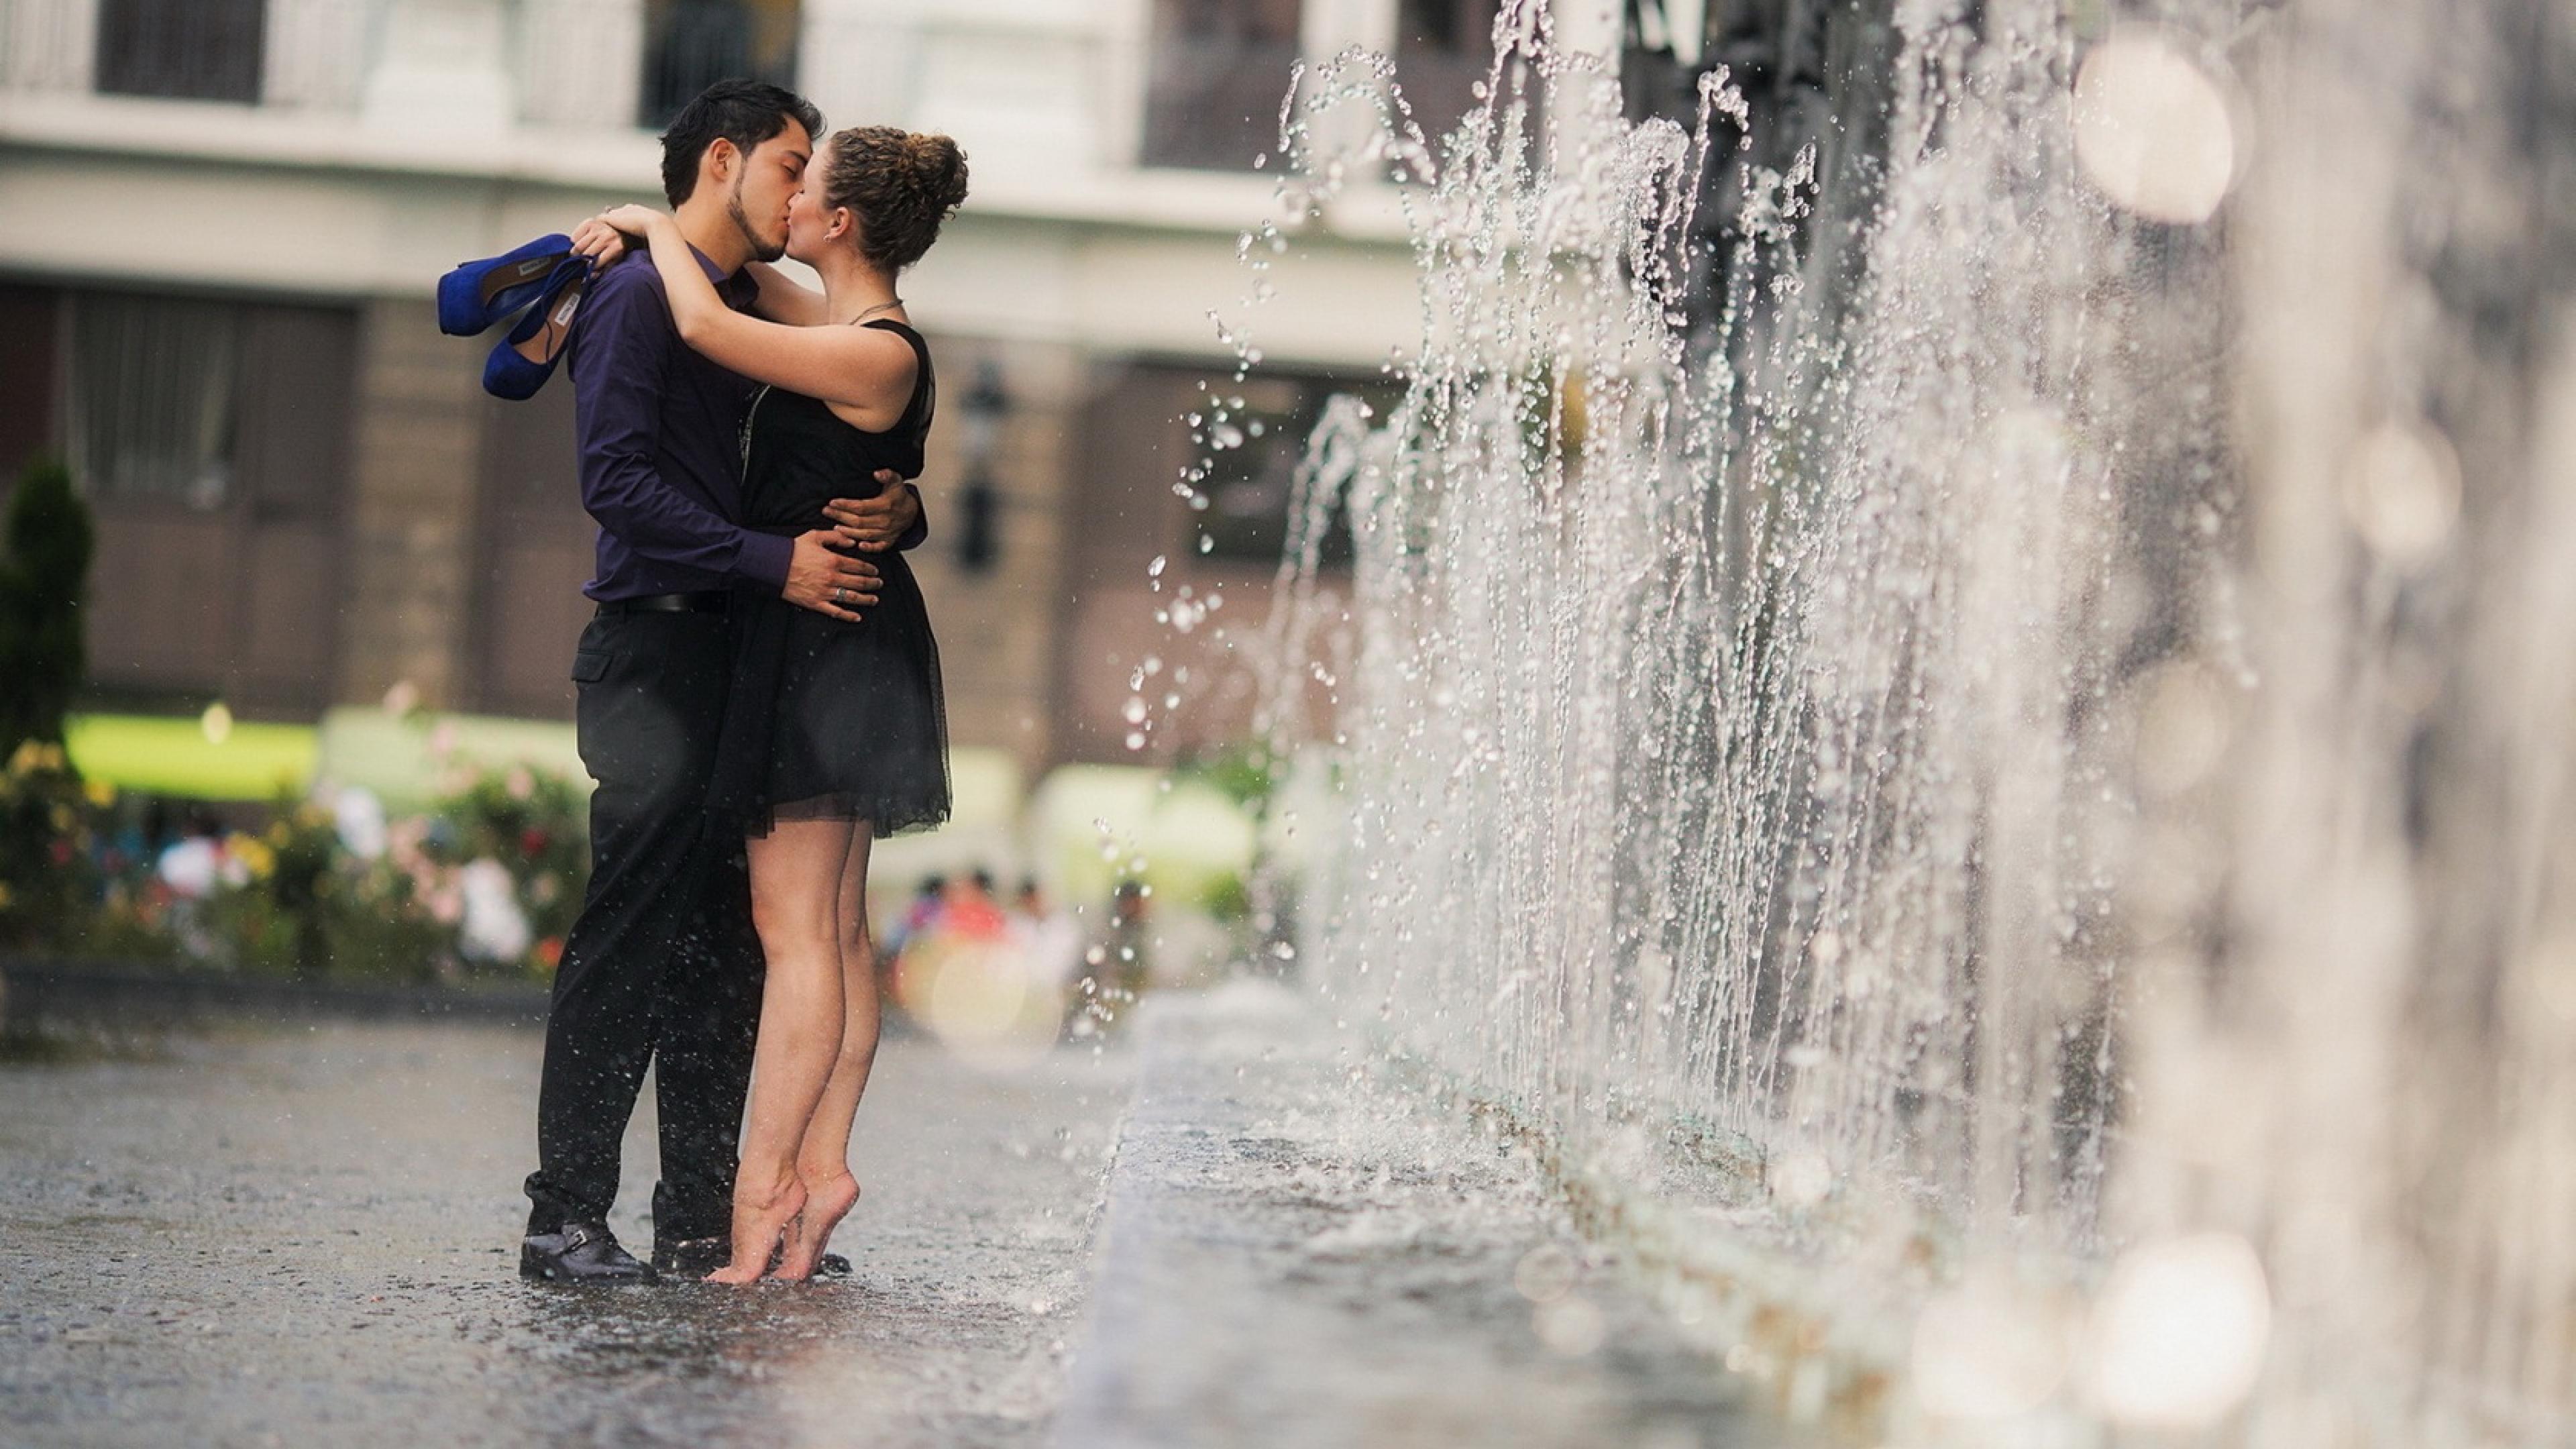 Картинки любовь. Романтические поступки. Мужчина и женщина под дождем. Радостная встреча. Романтичное настроение.